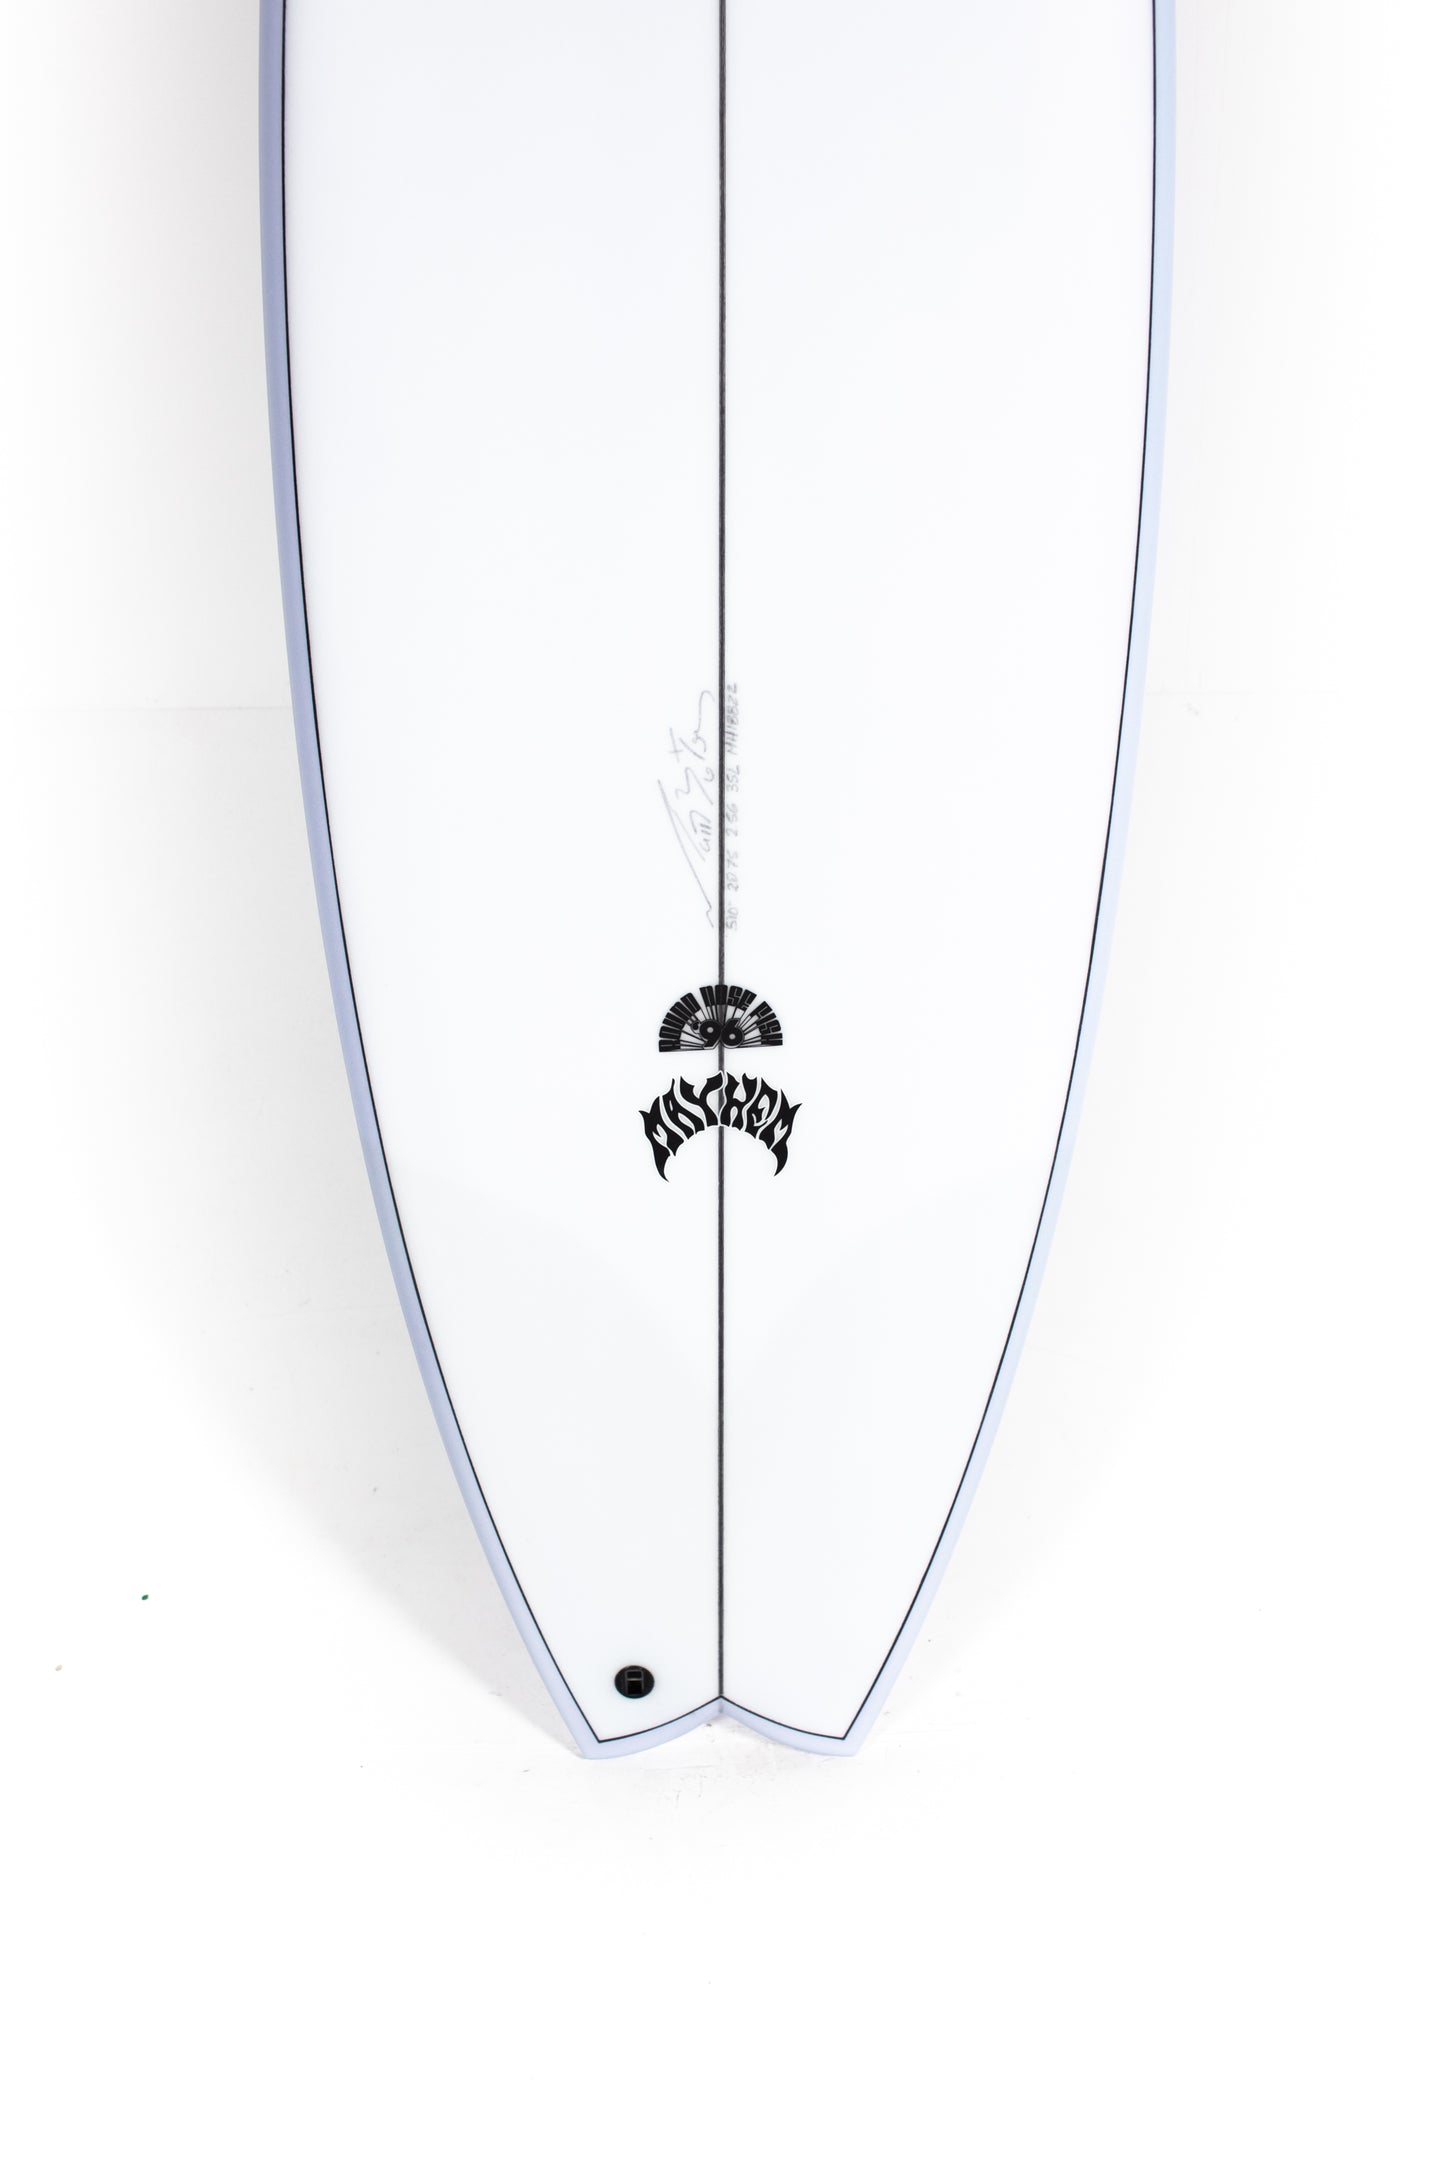 
                  
                    Pukas-Surf-Shop-Lost-Surfboards-RNF-96_Matt-Biolos-5_10
                  
                